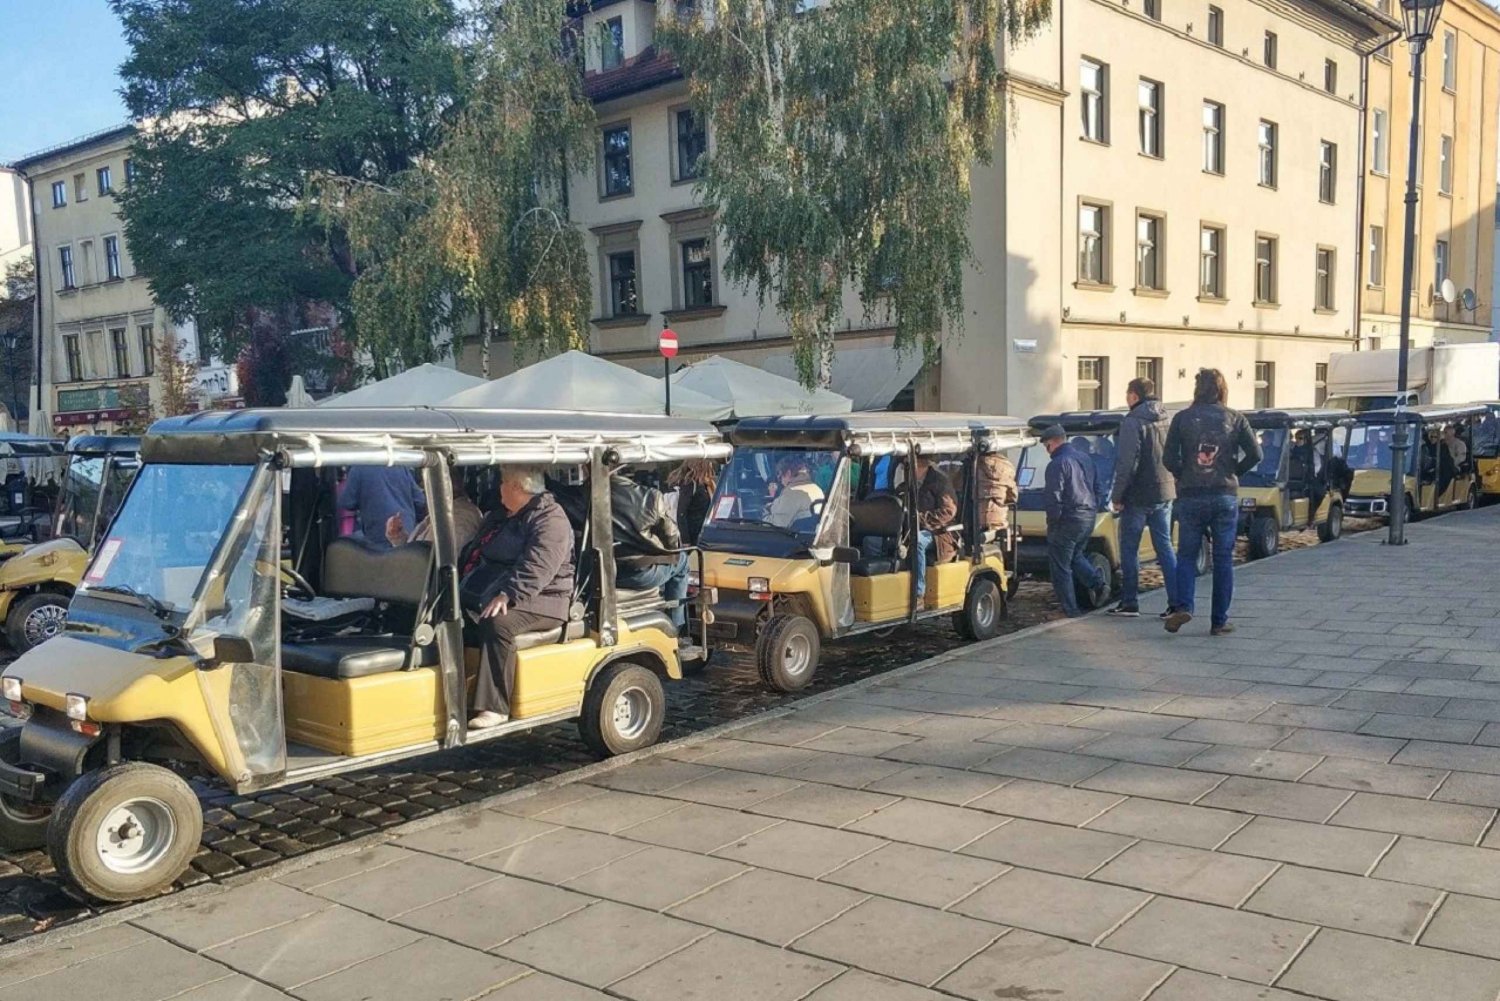 Krakau: Tour per elektrische golfkar door de Joodse wijk en het getto